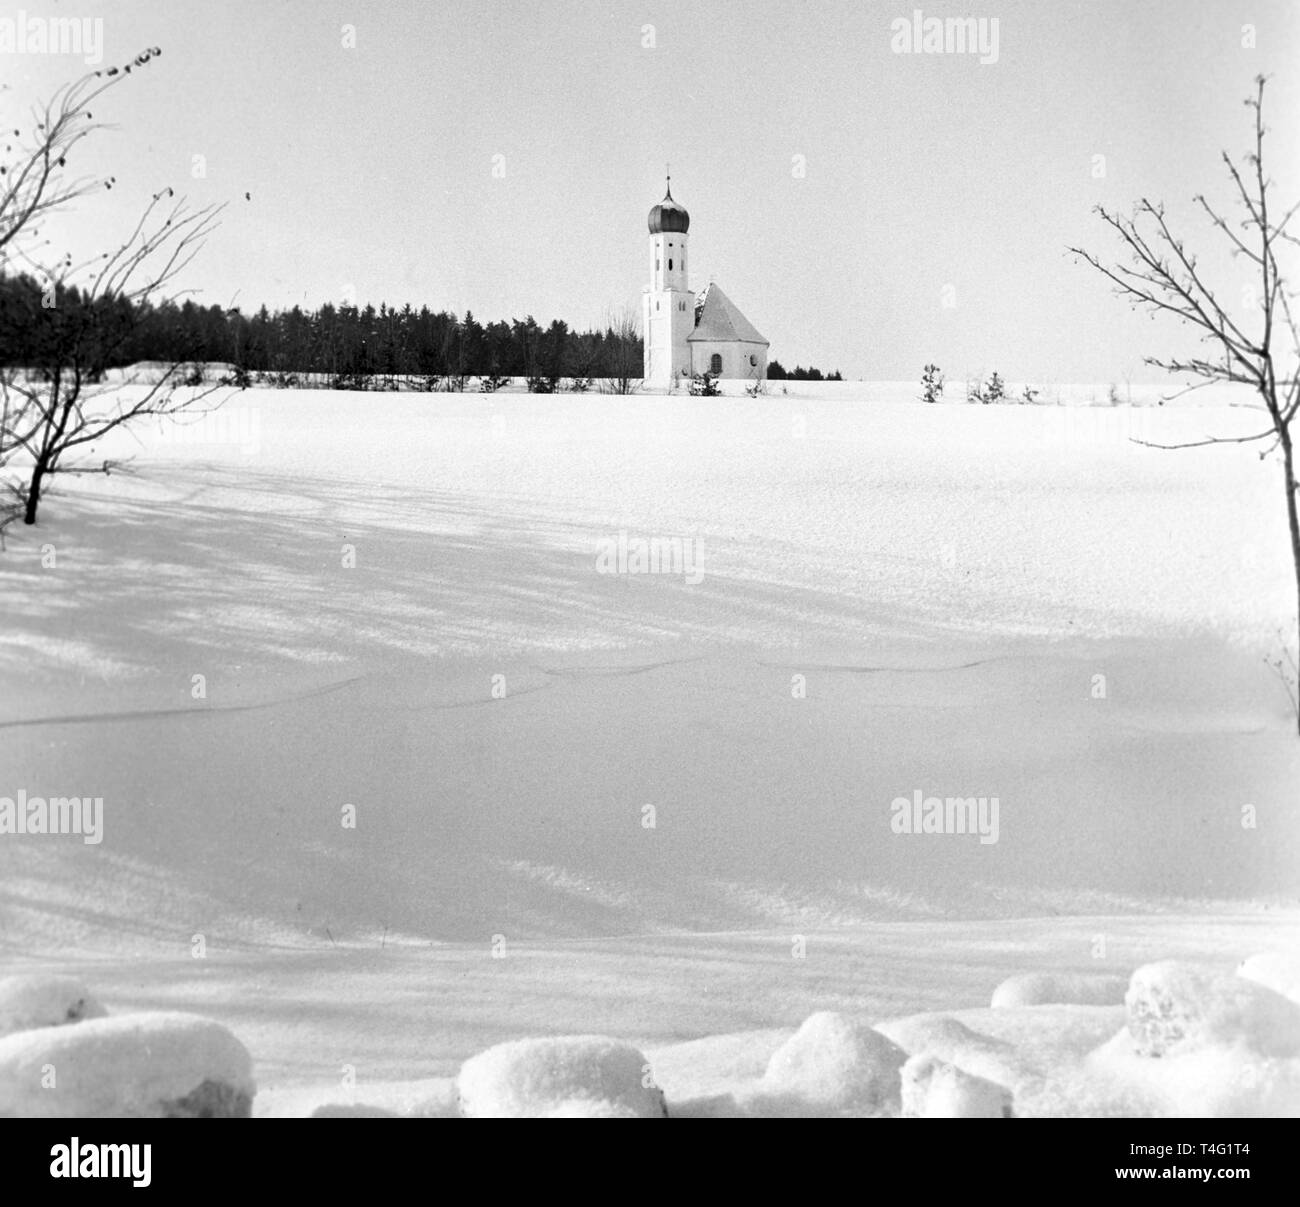 Blick auf die Kirche in einer fast unberührten Mantel aus Schnee (undatiert Archiv Bild vom Januar 1963). | Verwendung weltweit Stockfoto